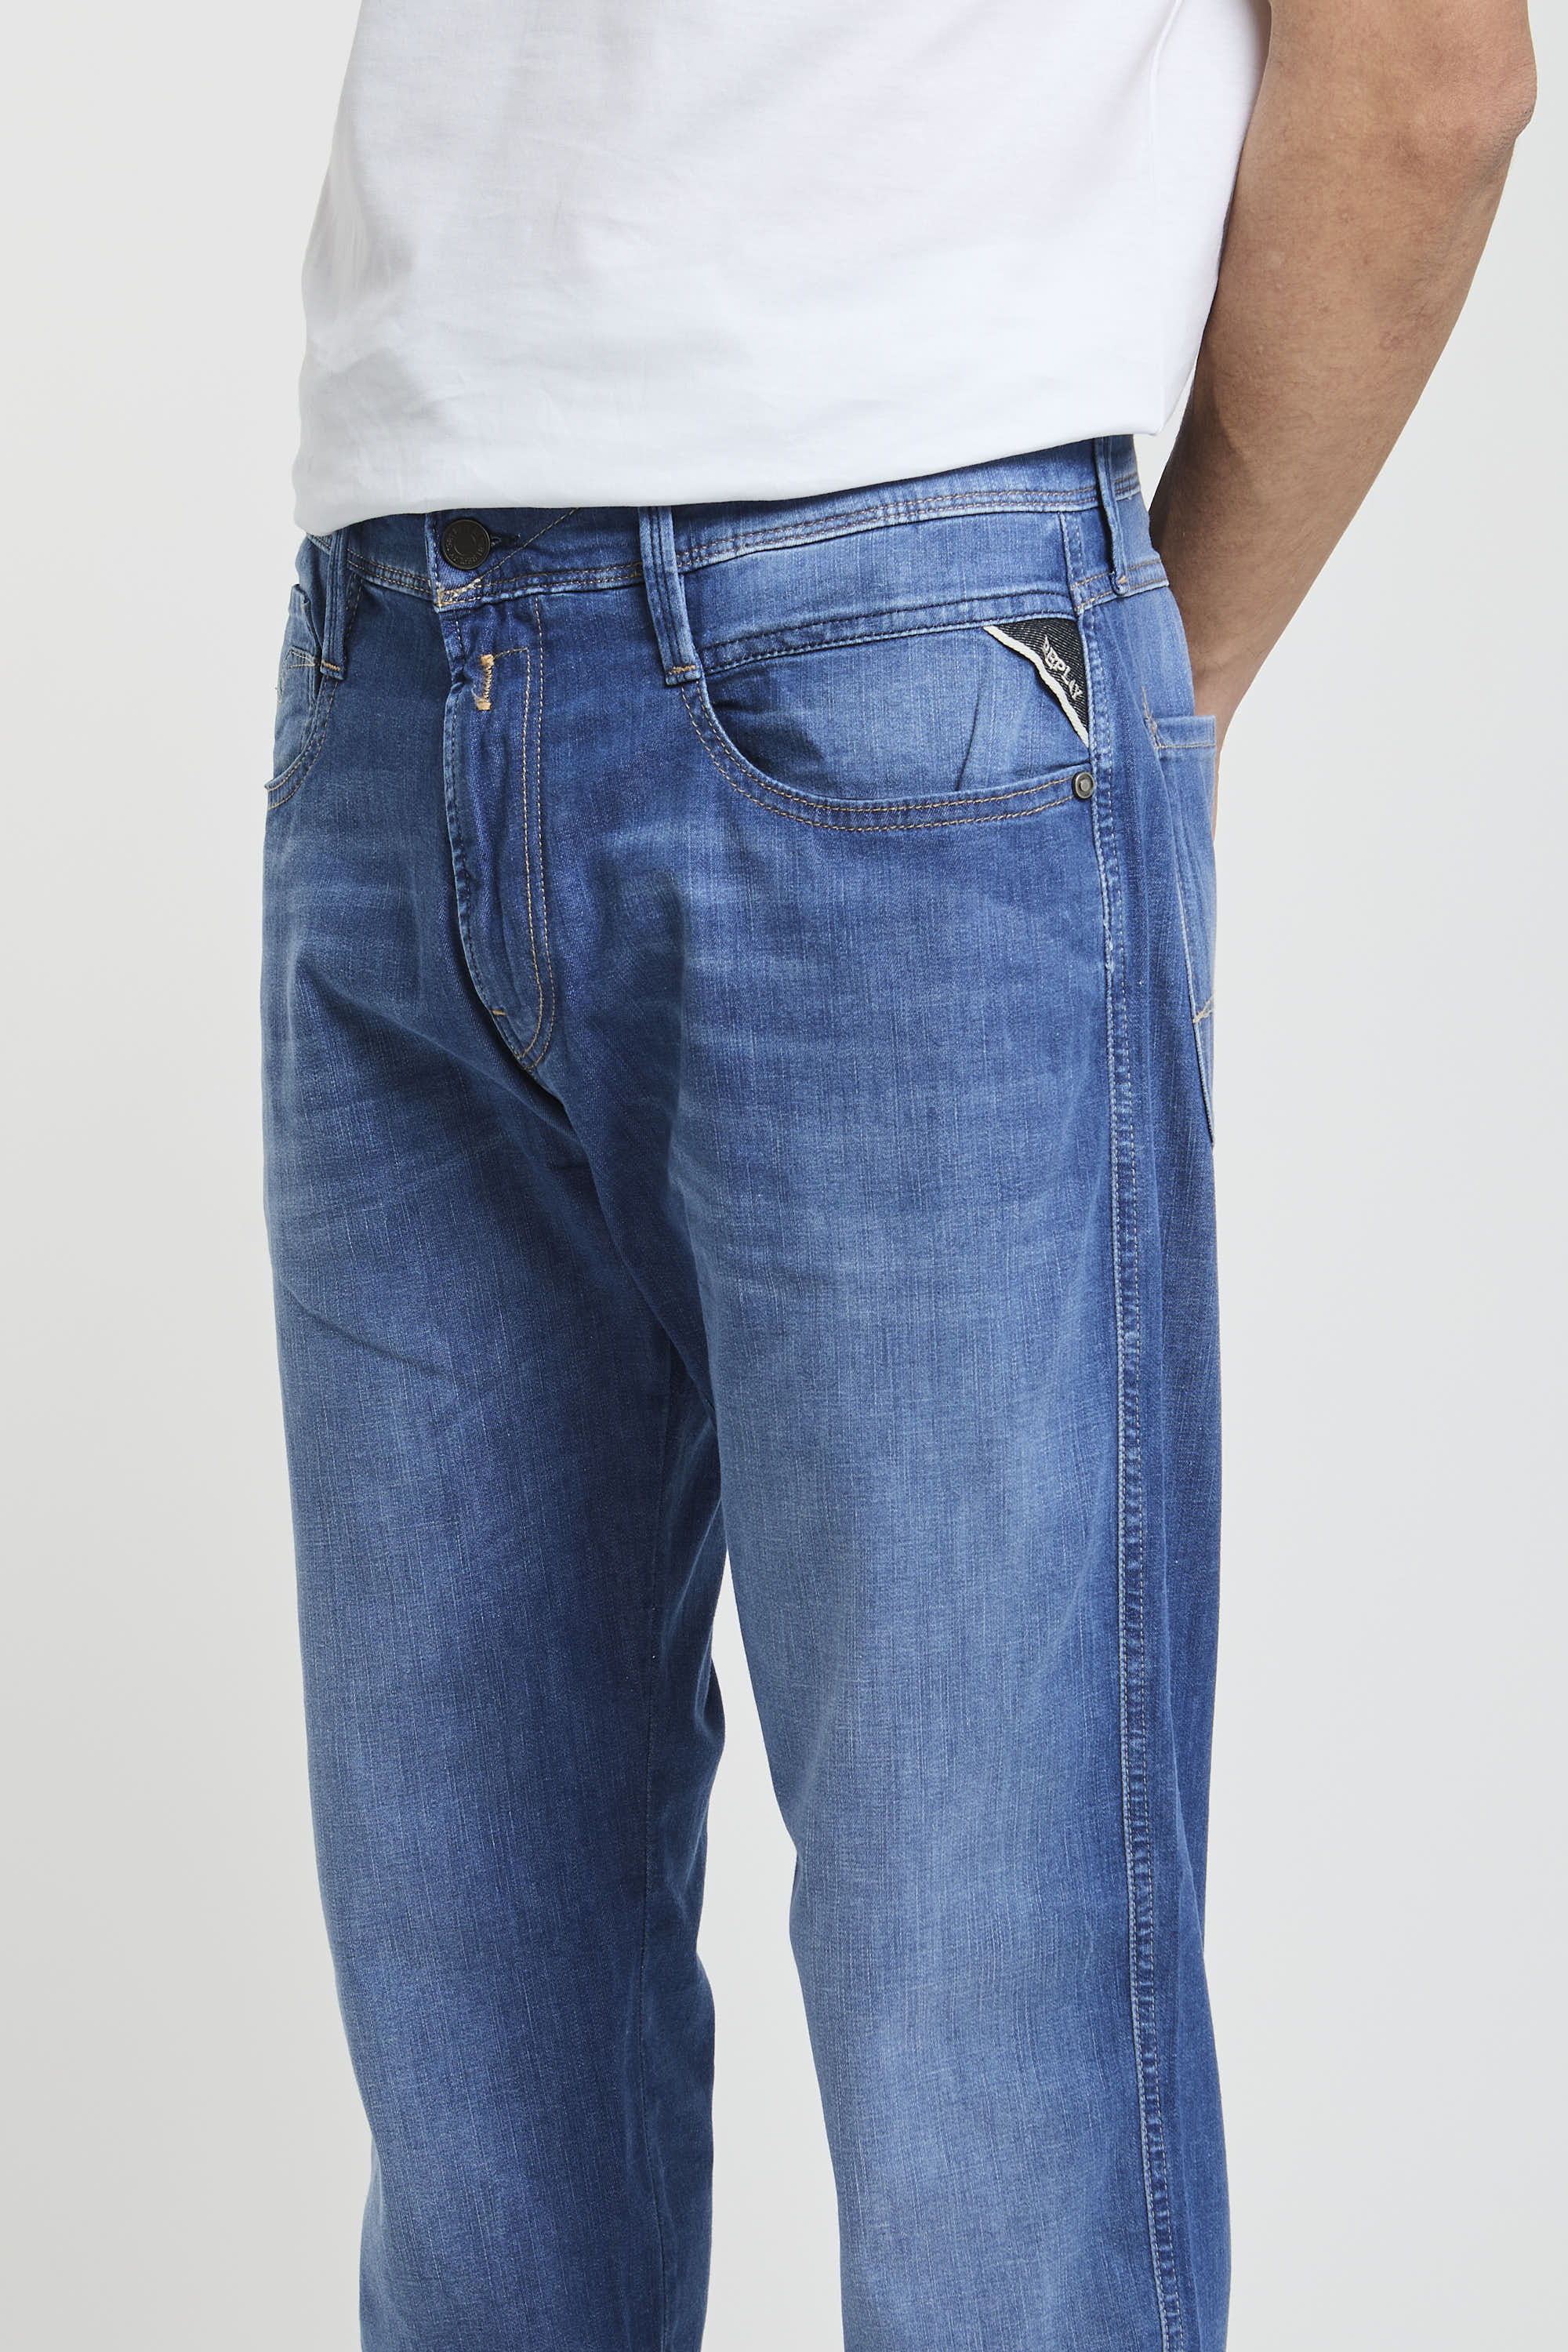 Replay Jeans Slim Fit aus Denim in Baumwolle/Lyocell/Elastomultiester/Elasthan-2